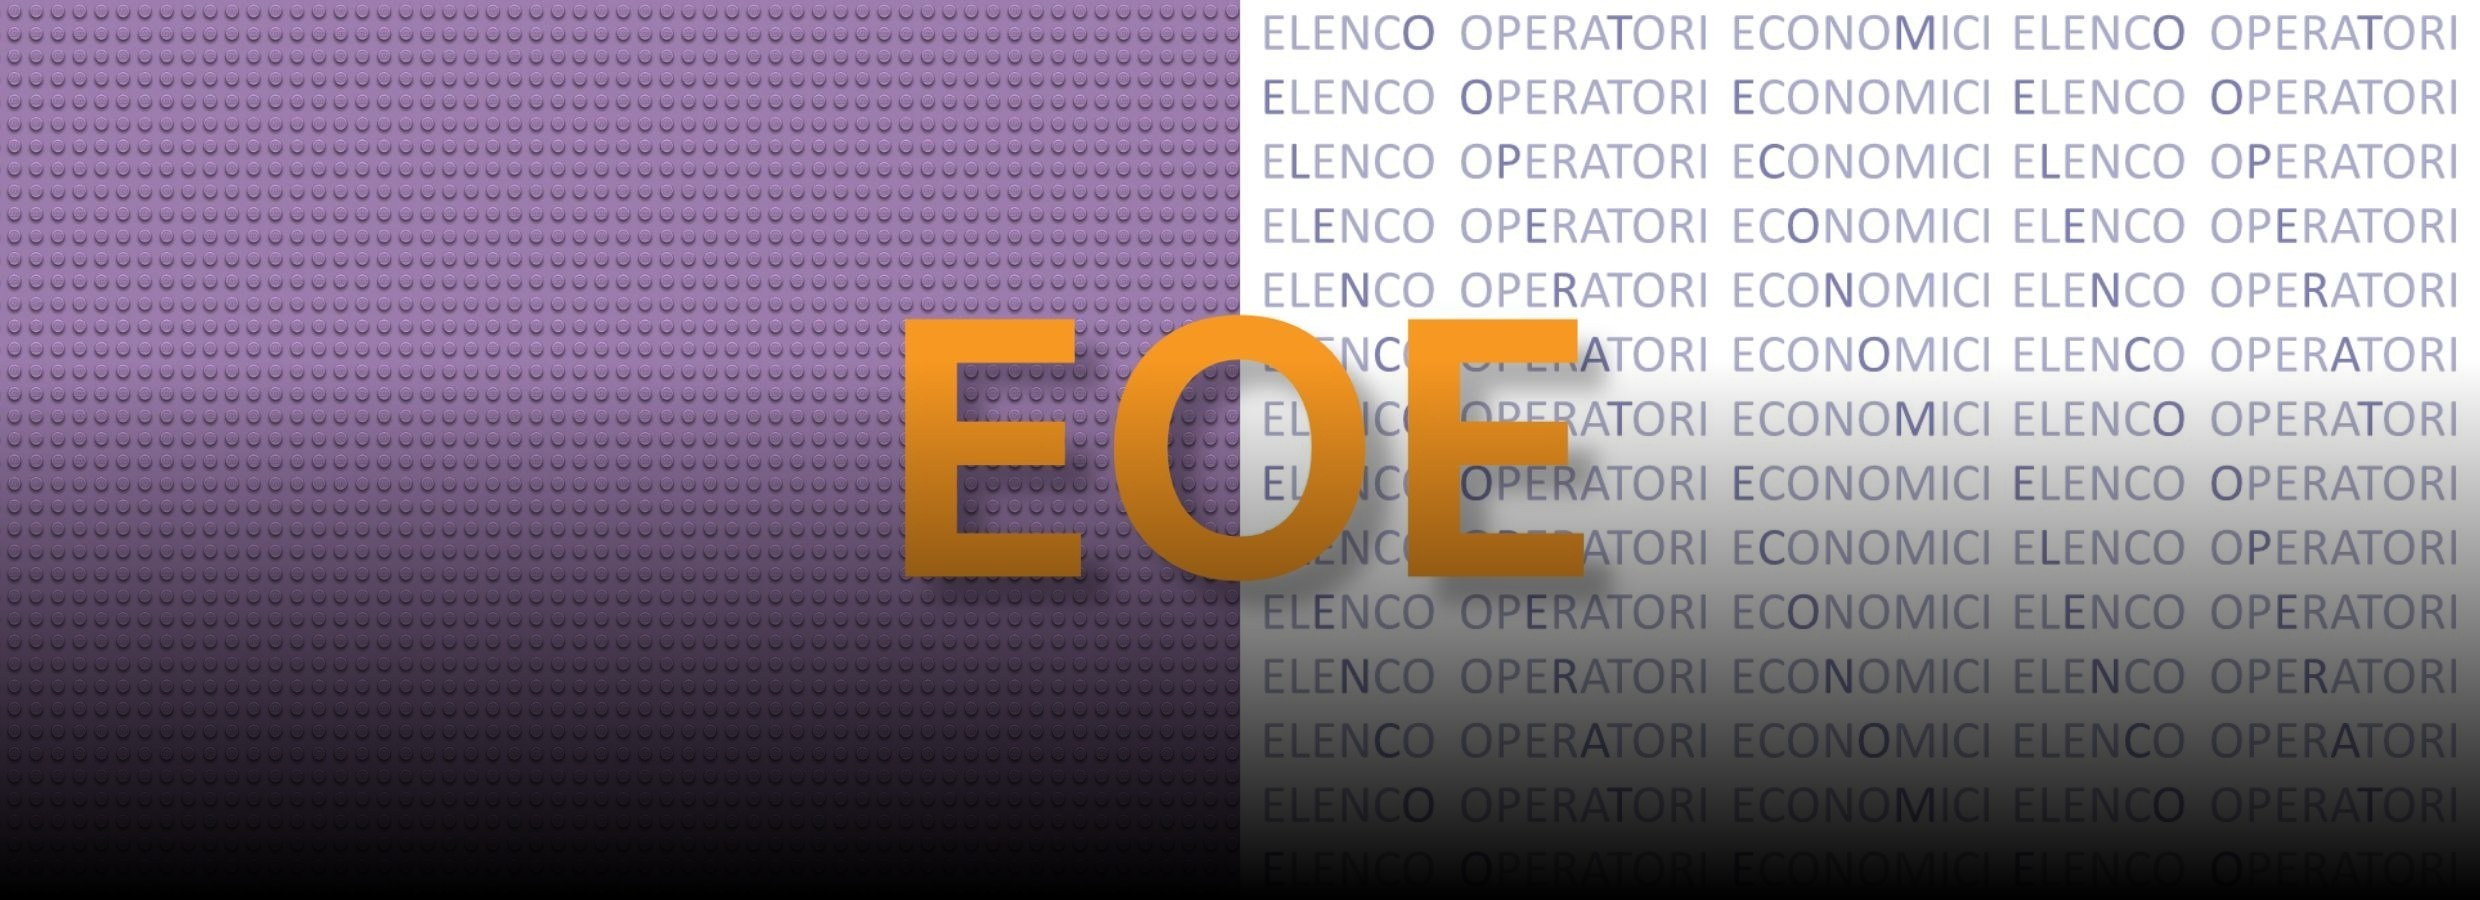 Slider con immagine grafica per Elenco Operatori Economici